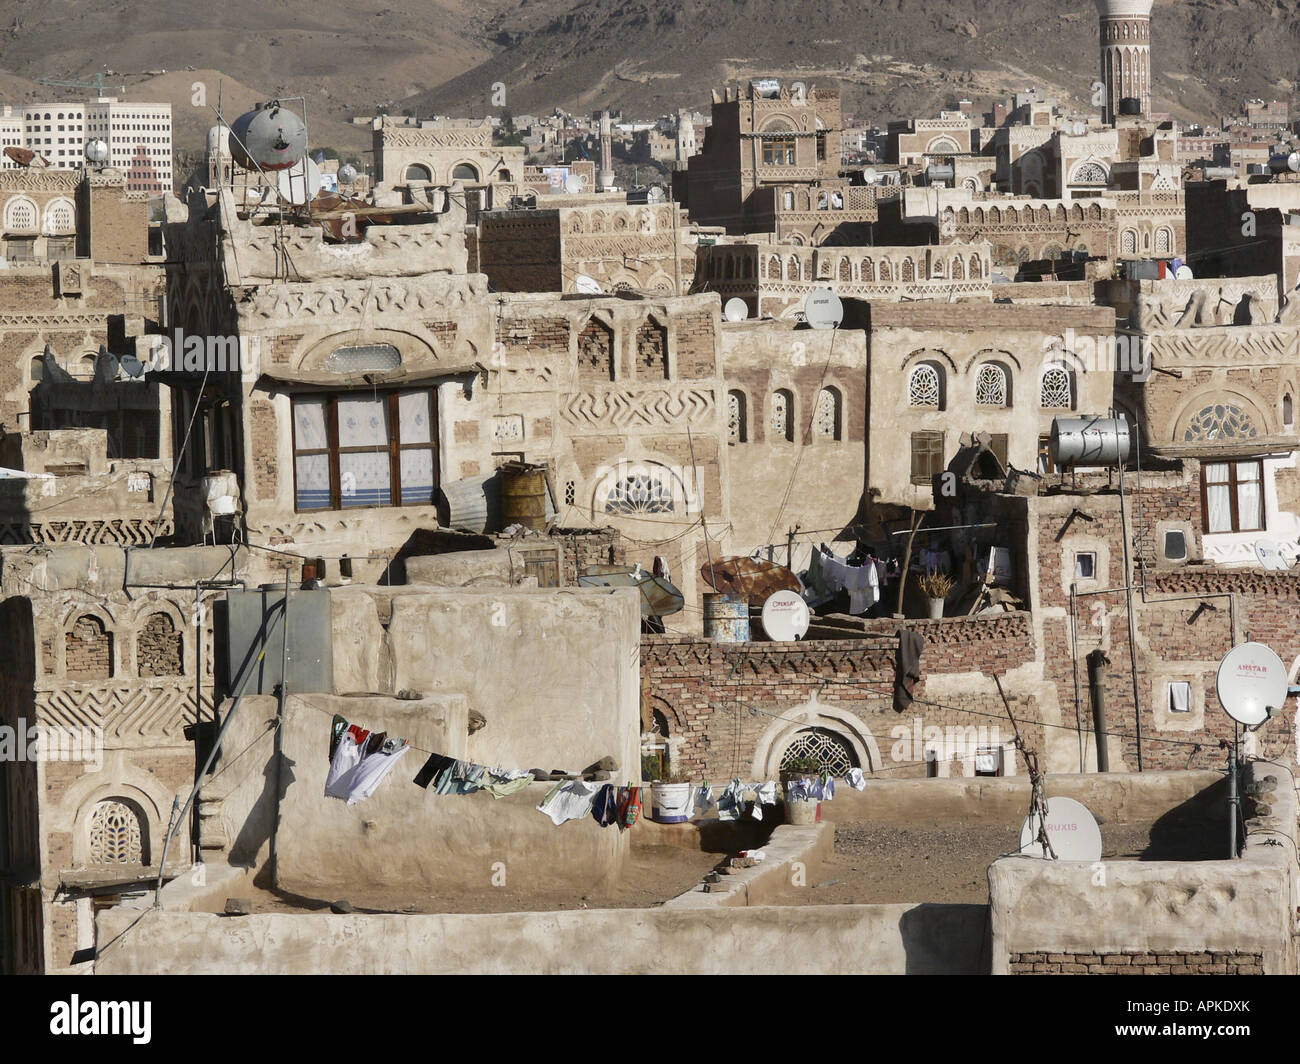 old town, Yemen, Sanaa Stock Photo